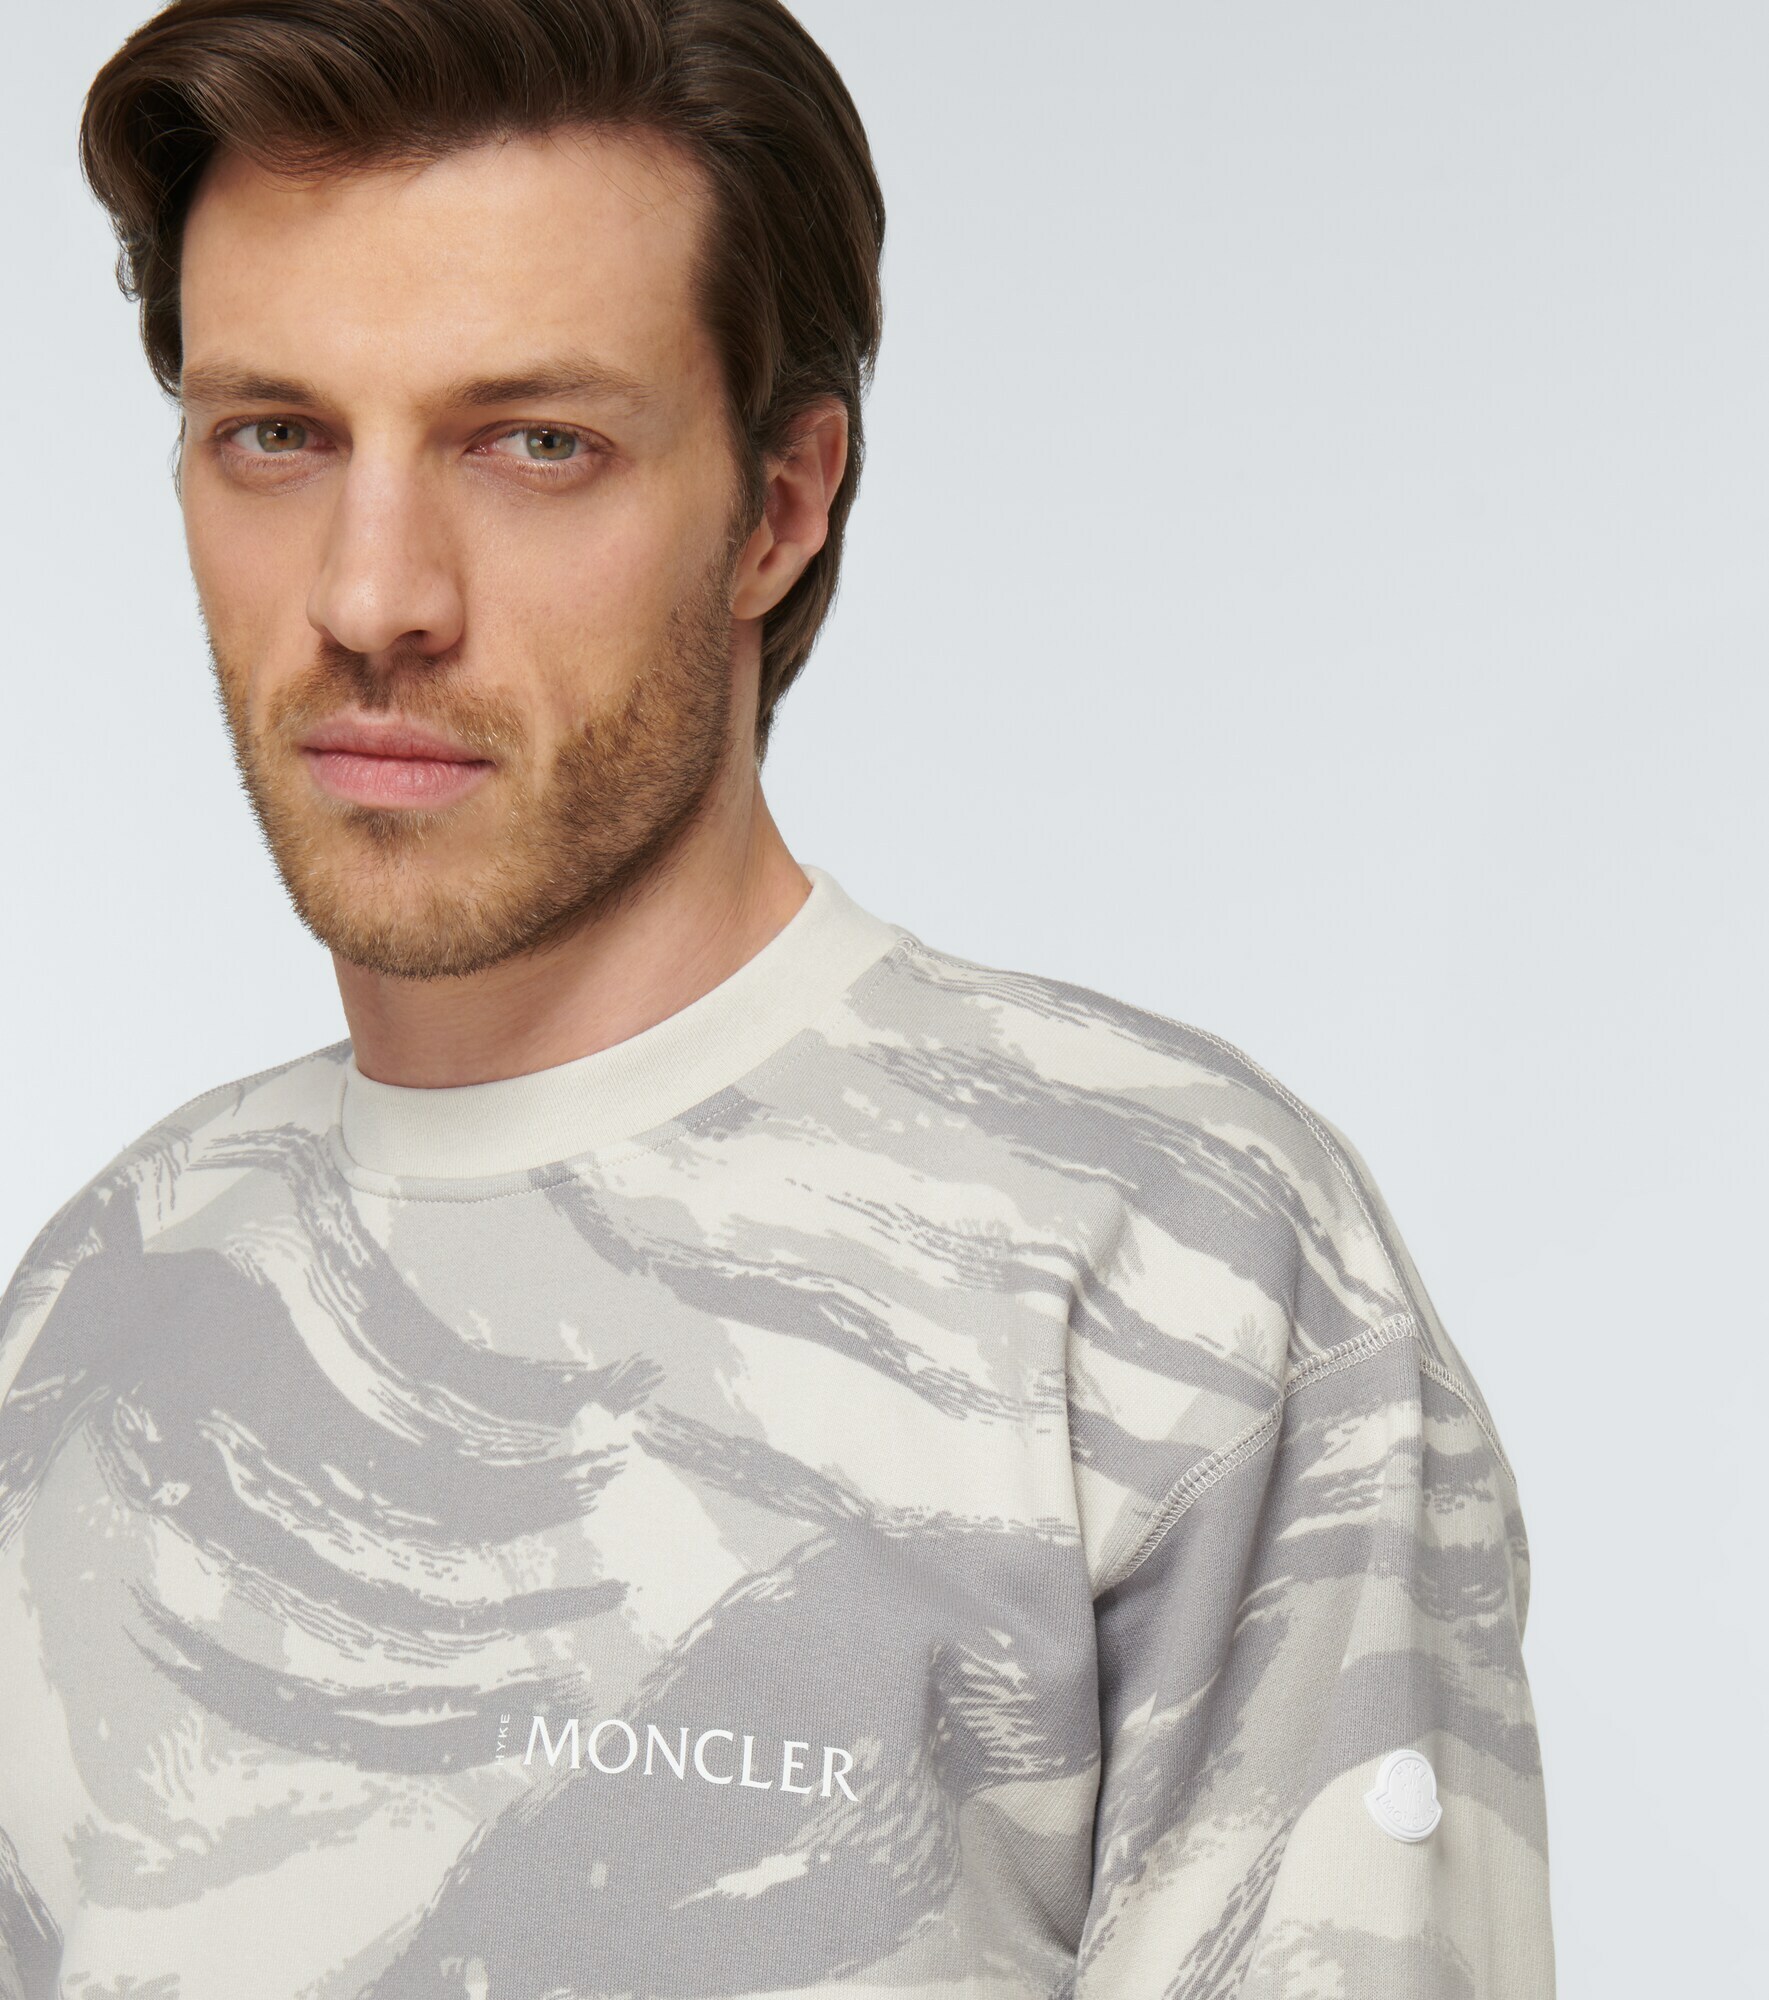 Moncler Genius - 4 Moncler Hyke printed cotton sweatshirt Moncler Genius